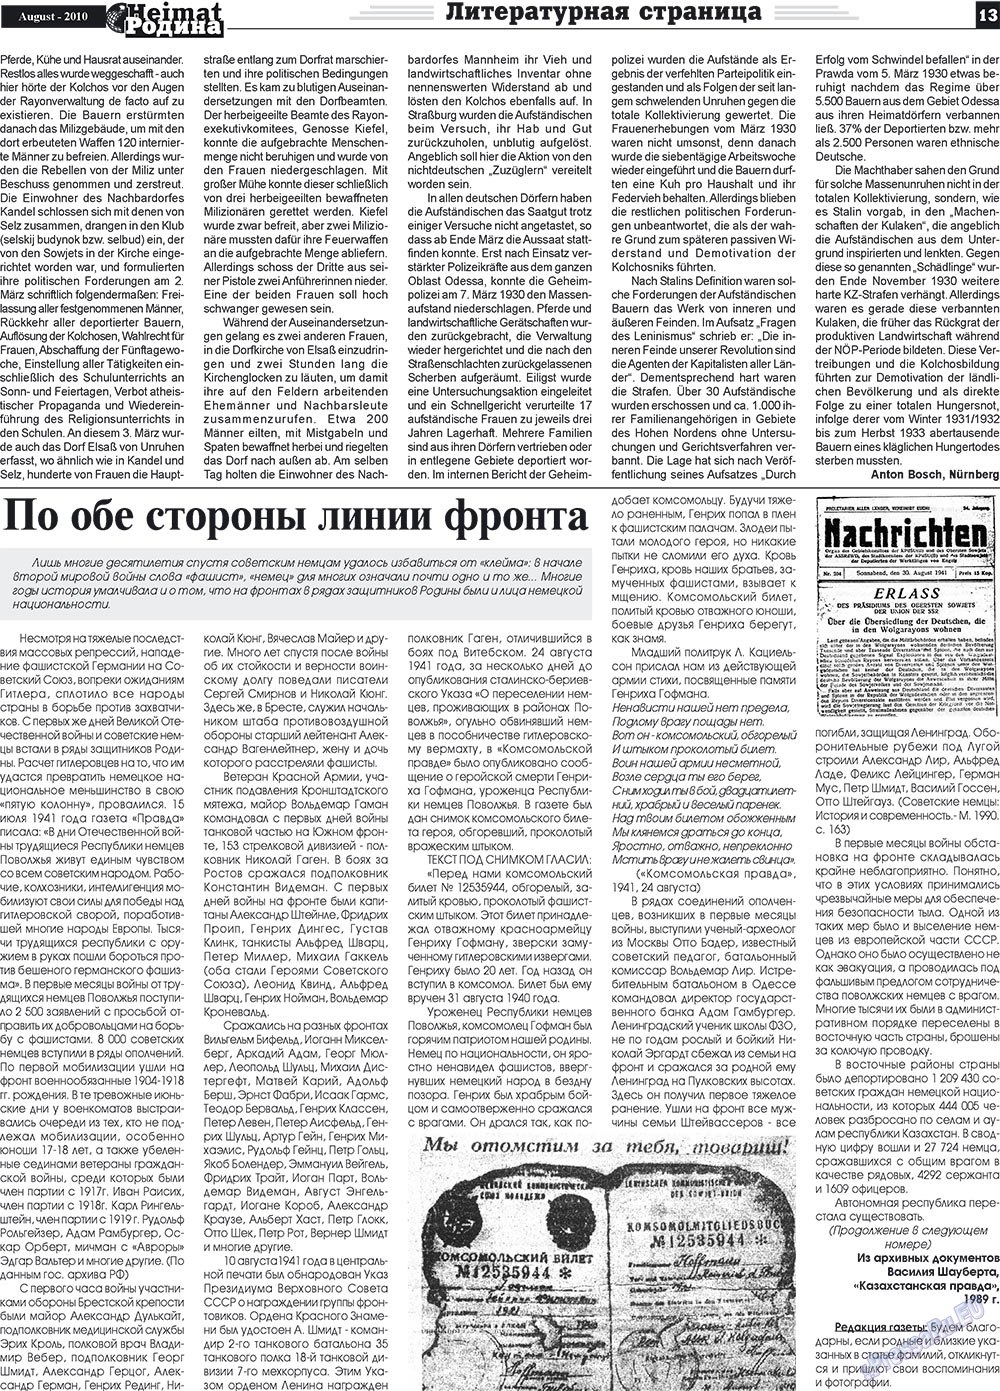 Heimat-Родина (газета). 2010 год, номер 8, стр. 13